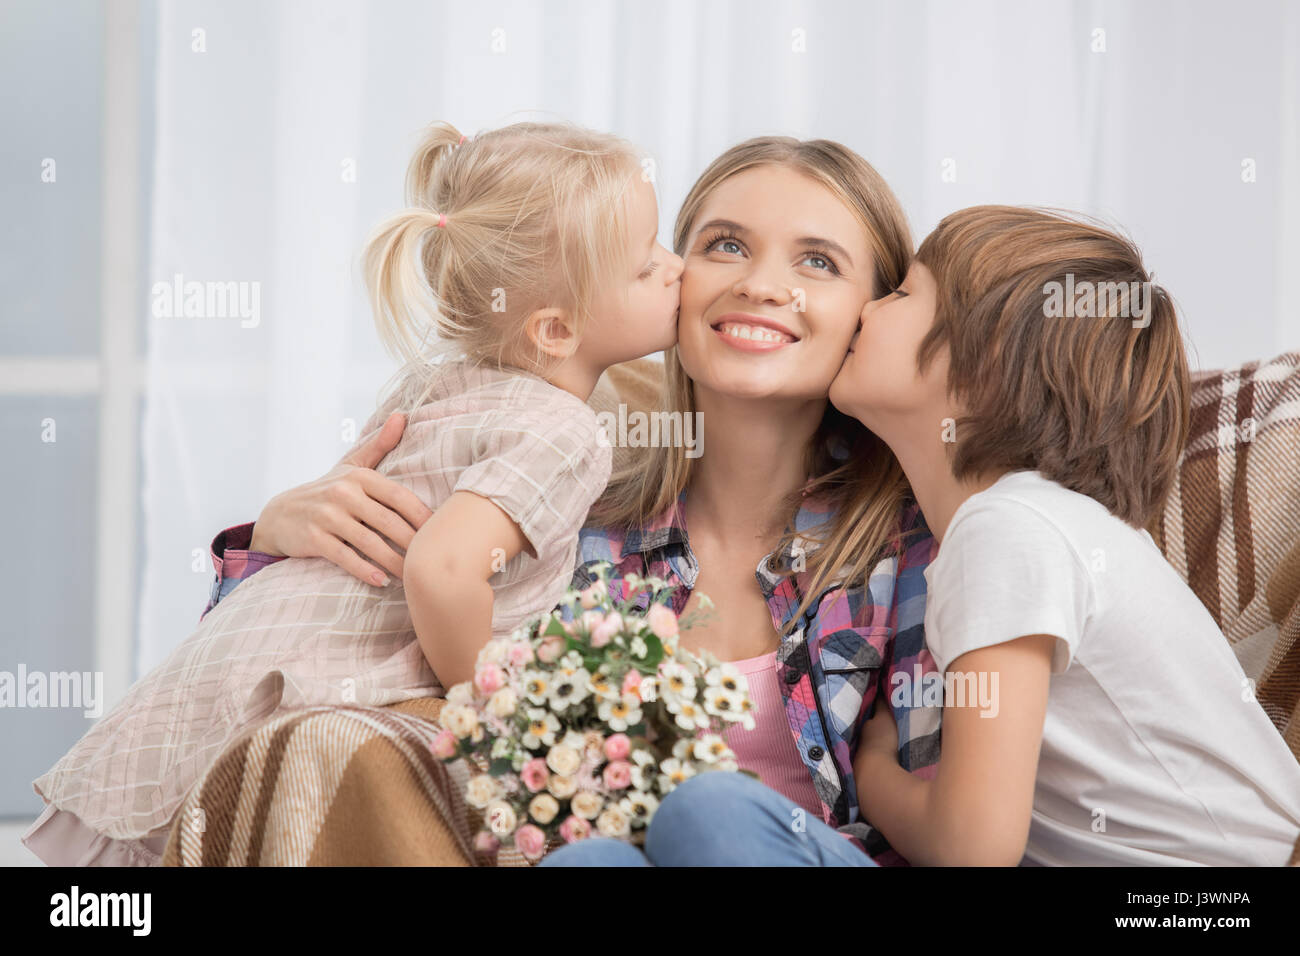 La madre y los hijos crianza maternidad amor Care Concept Foto de stock